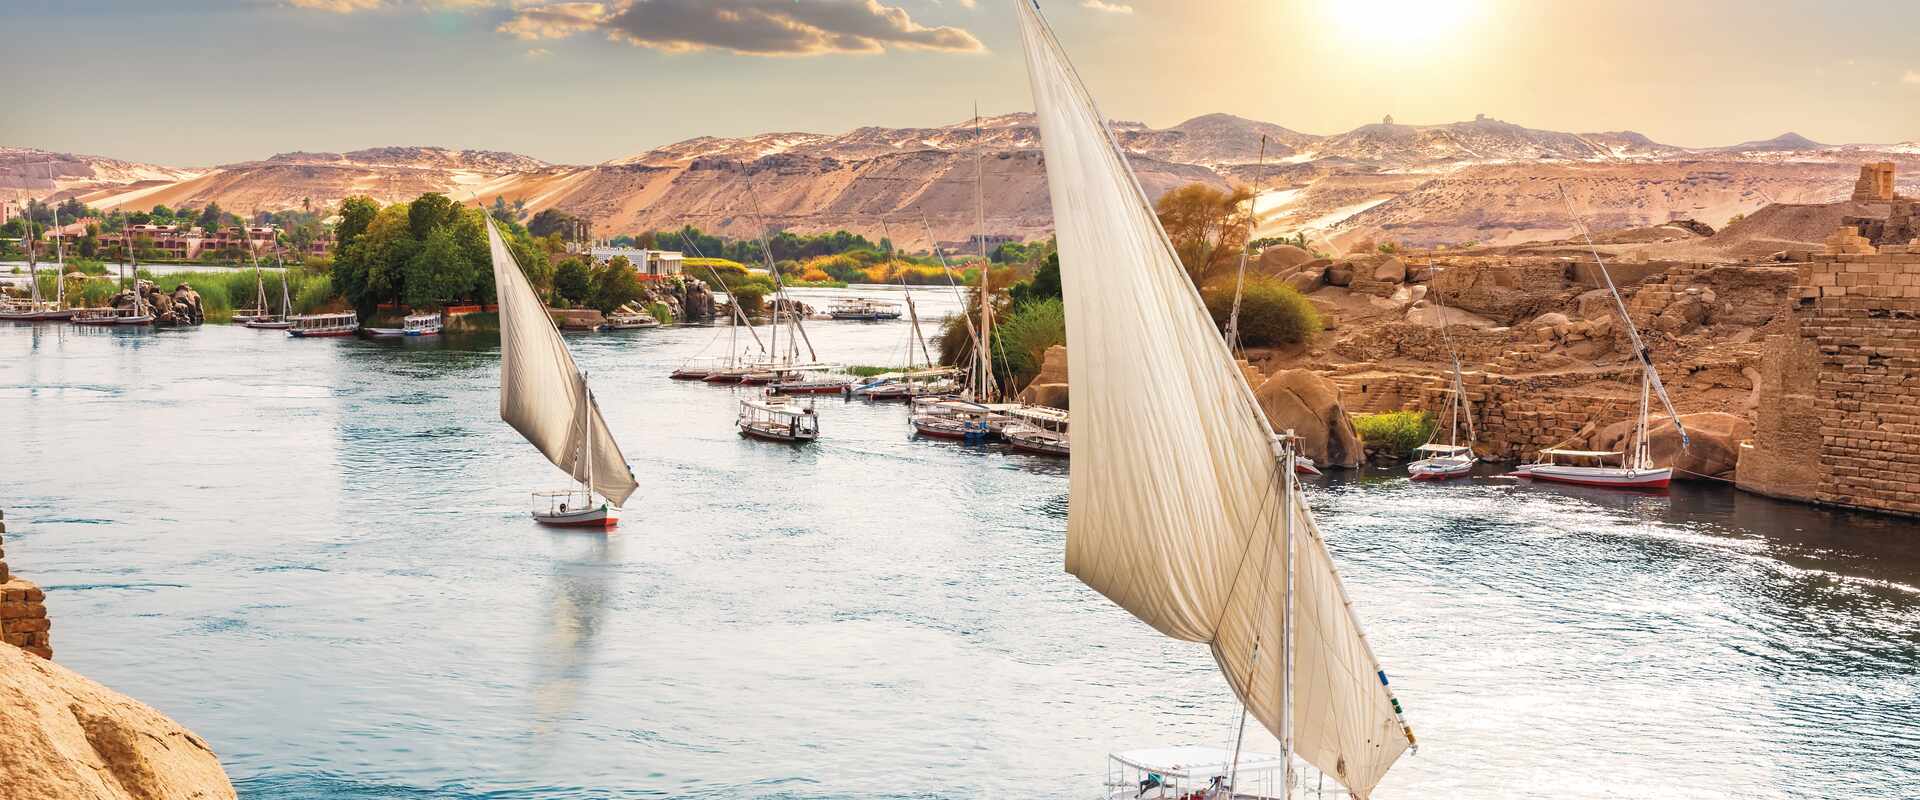 Boats sailing down the Nile at sunset